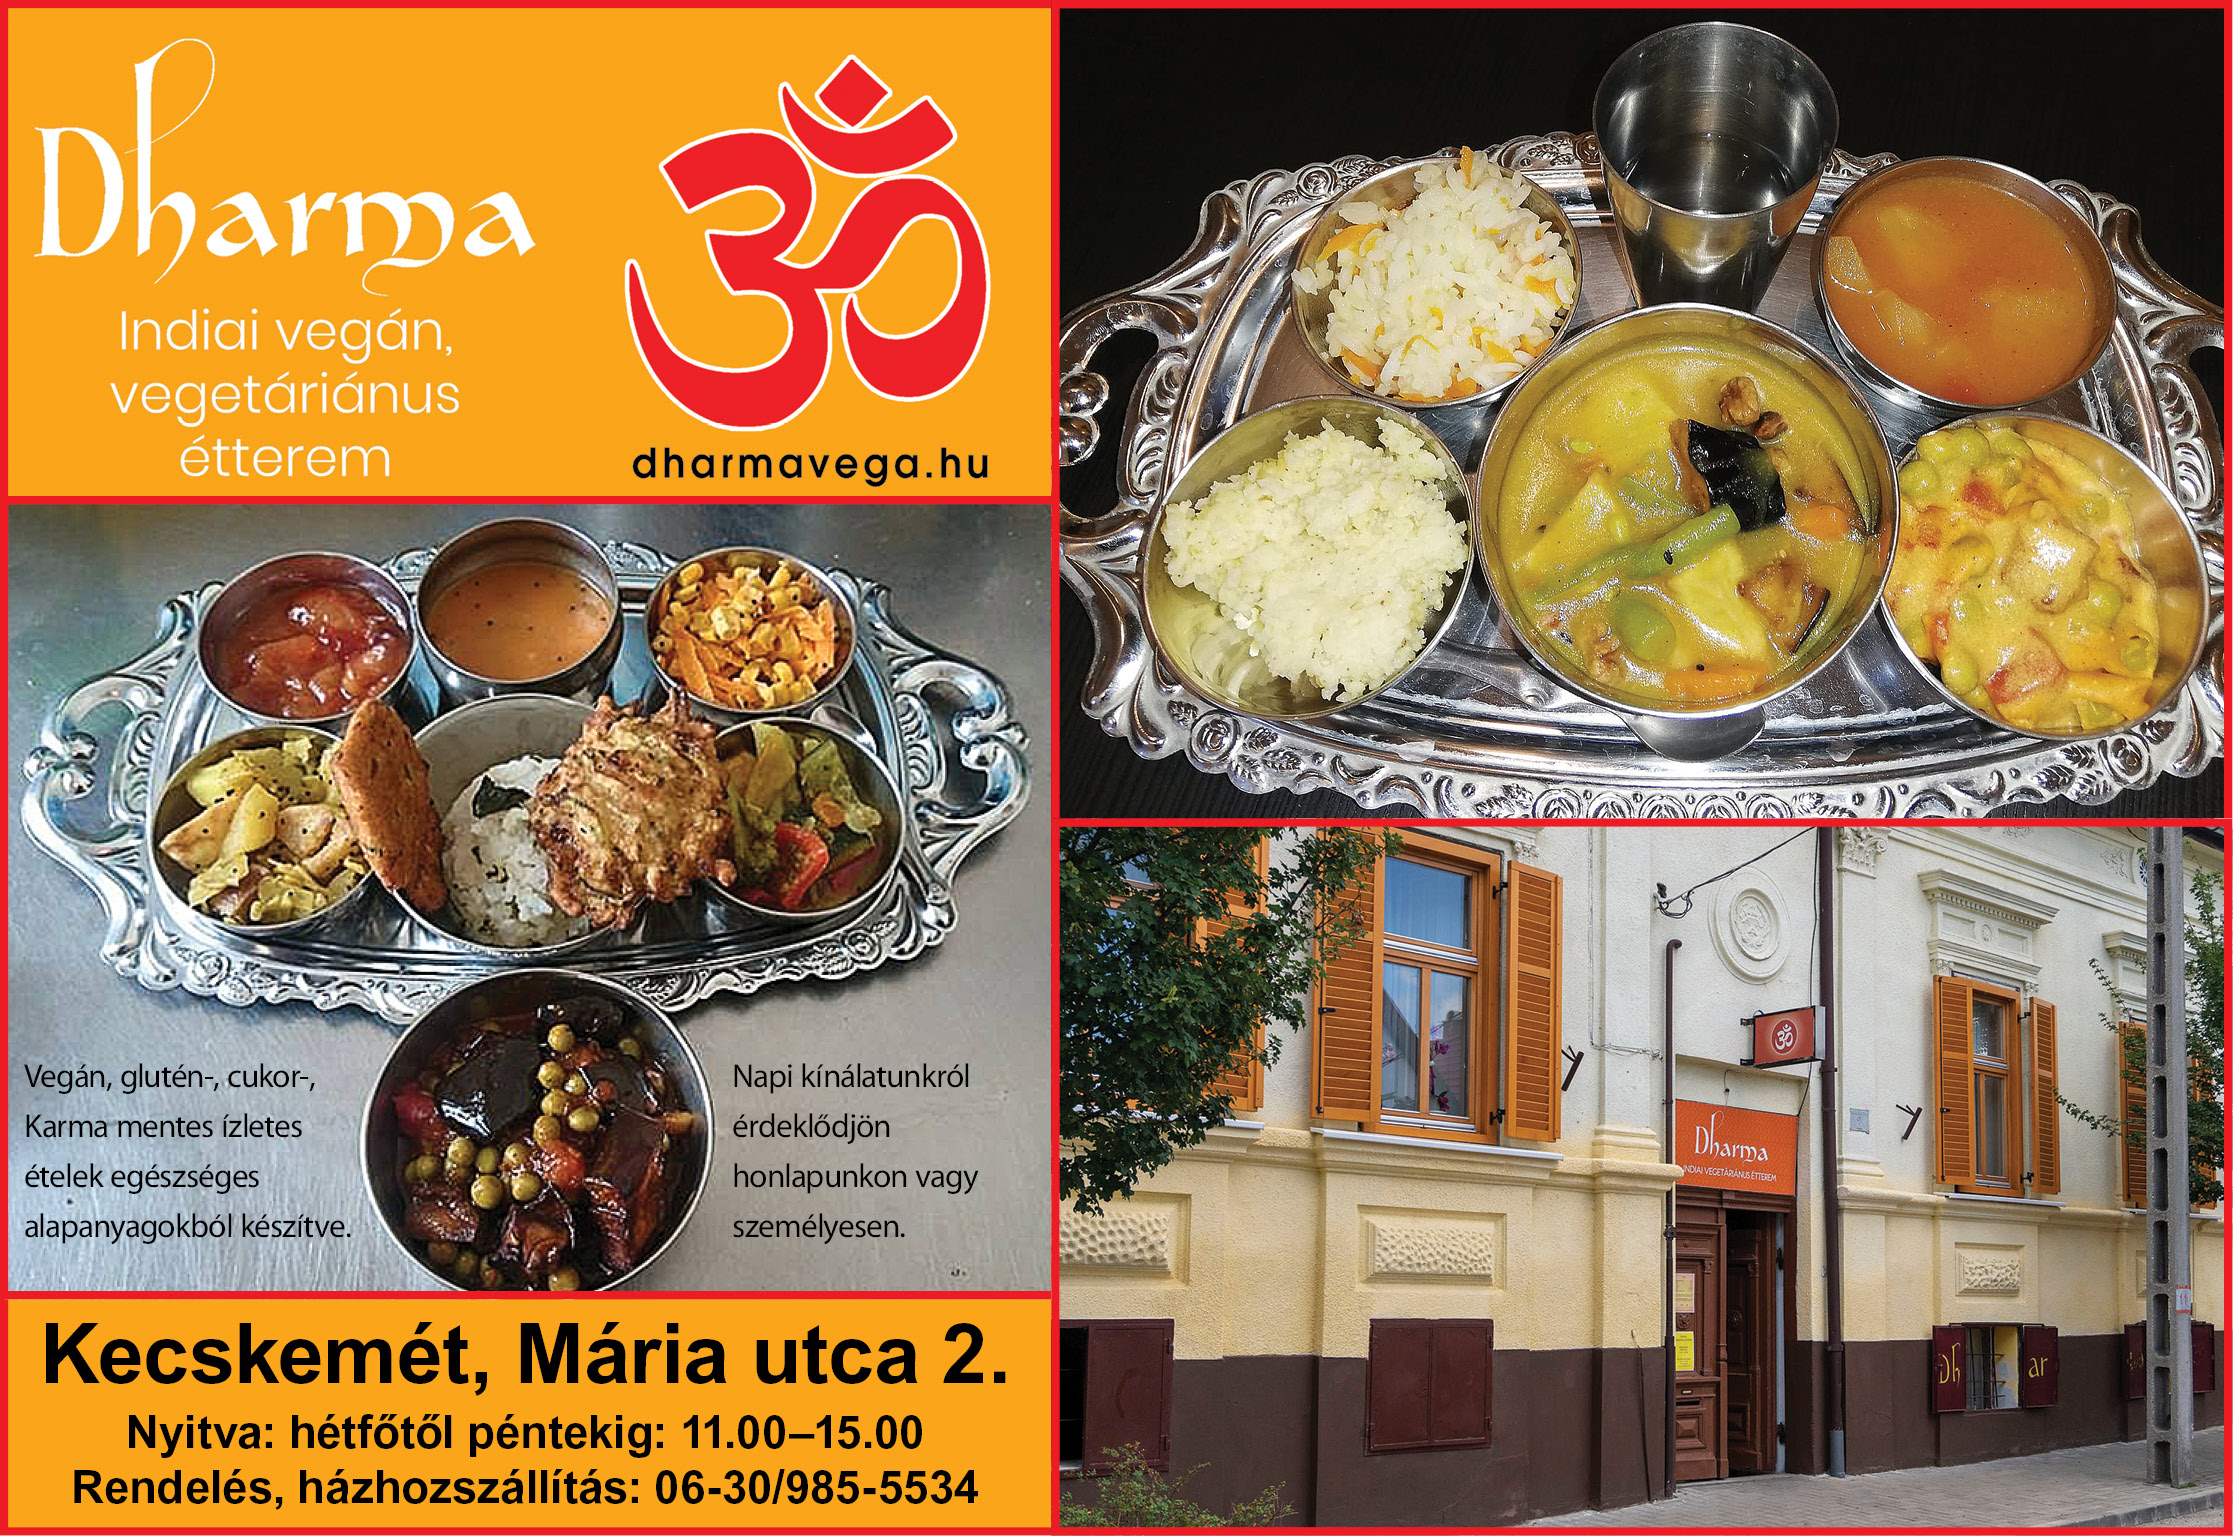 Dharma indiai vegán, vegetáriánus étterem